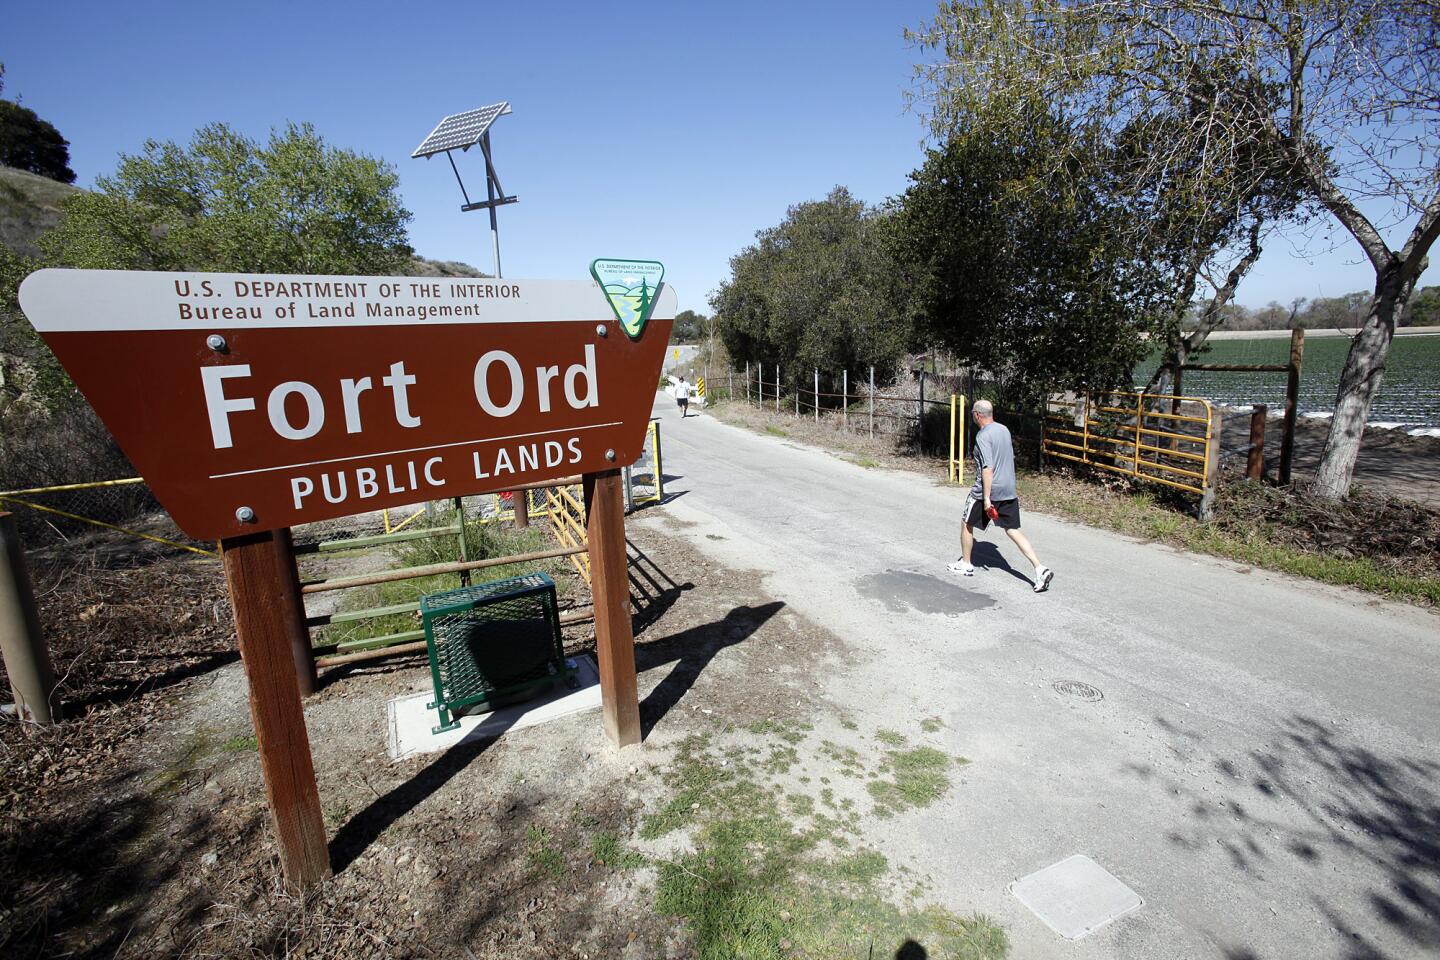 Fort Ord Public Lands